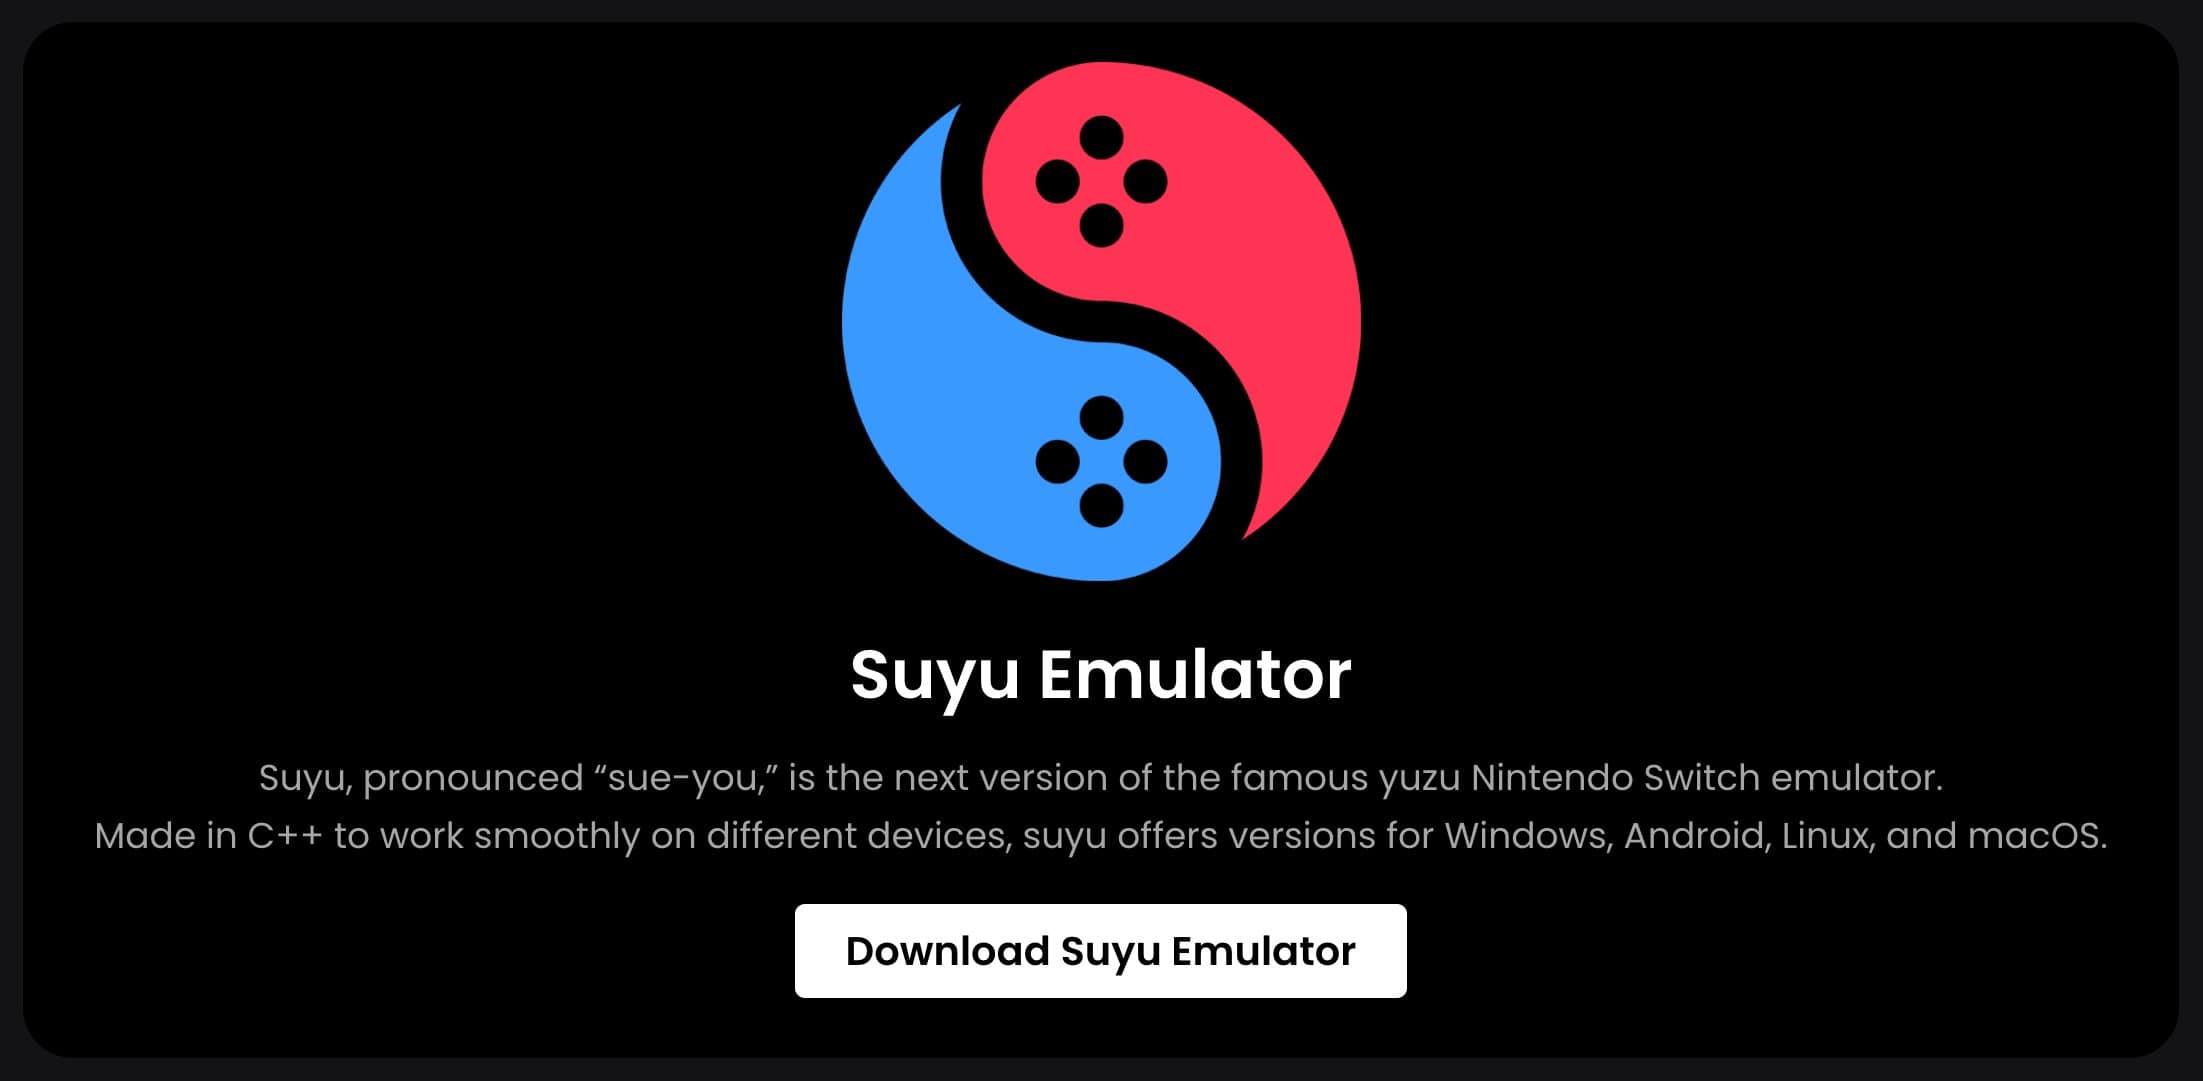 Nintendo Switchエミュレータ「Suyu」が公開後すぐに削除要請によりGitLabから消去される